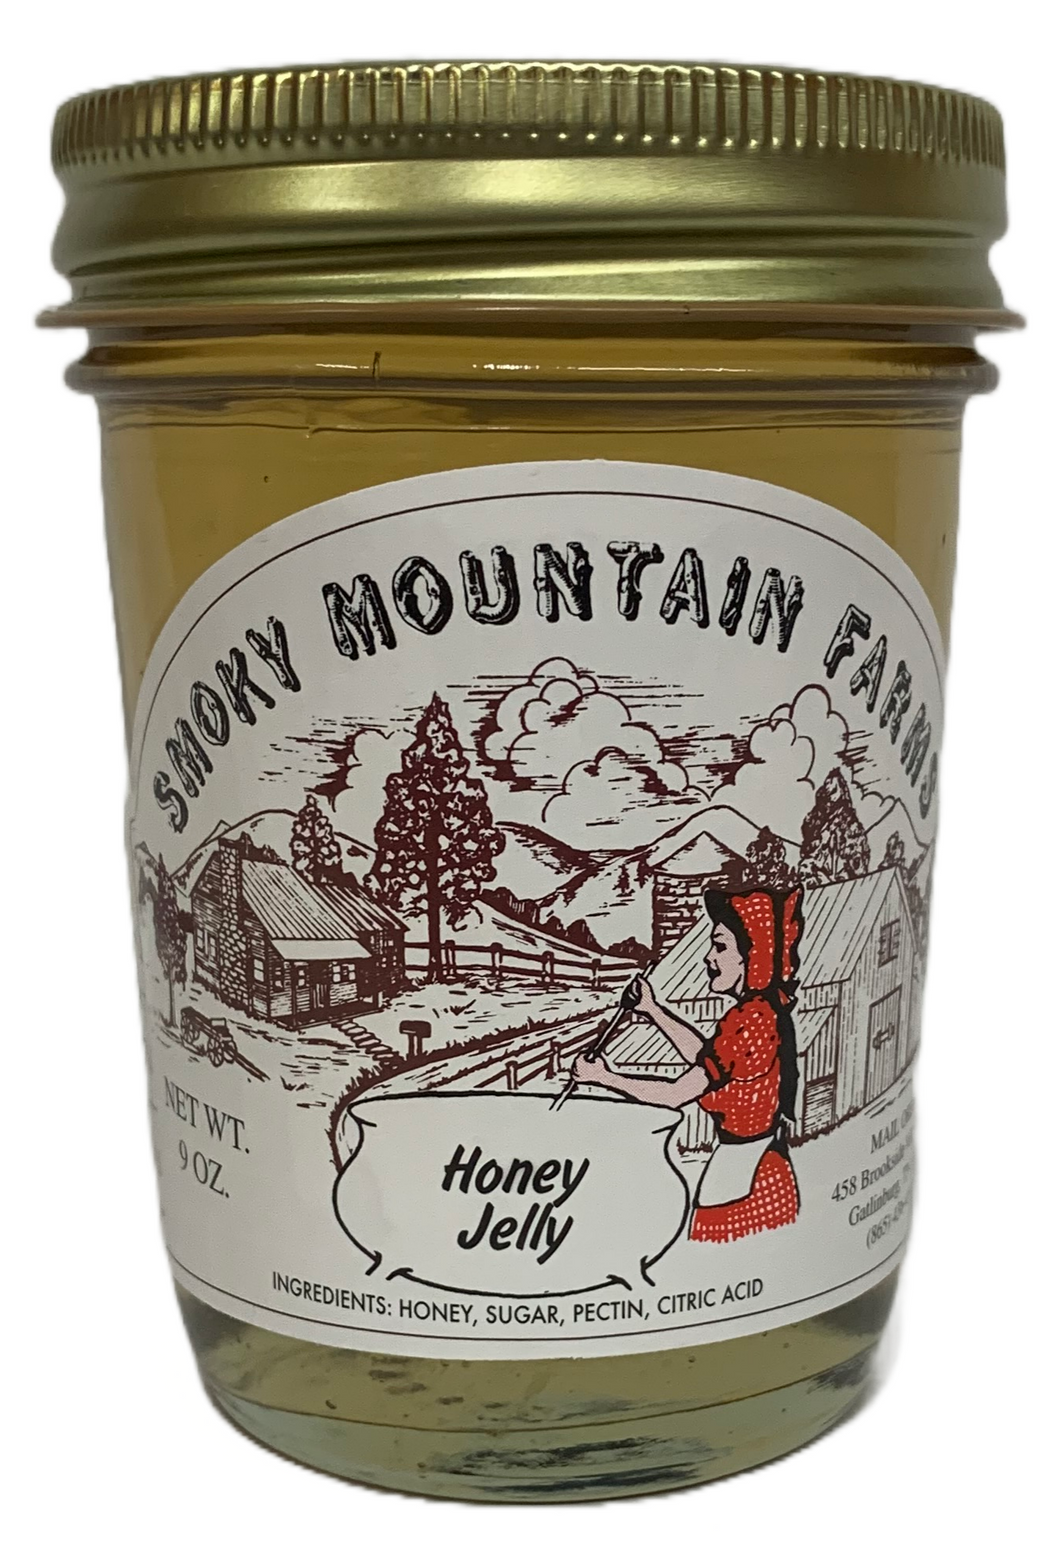 Honey Jelly